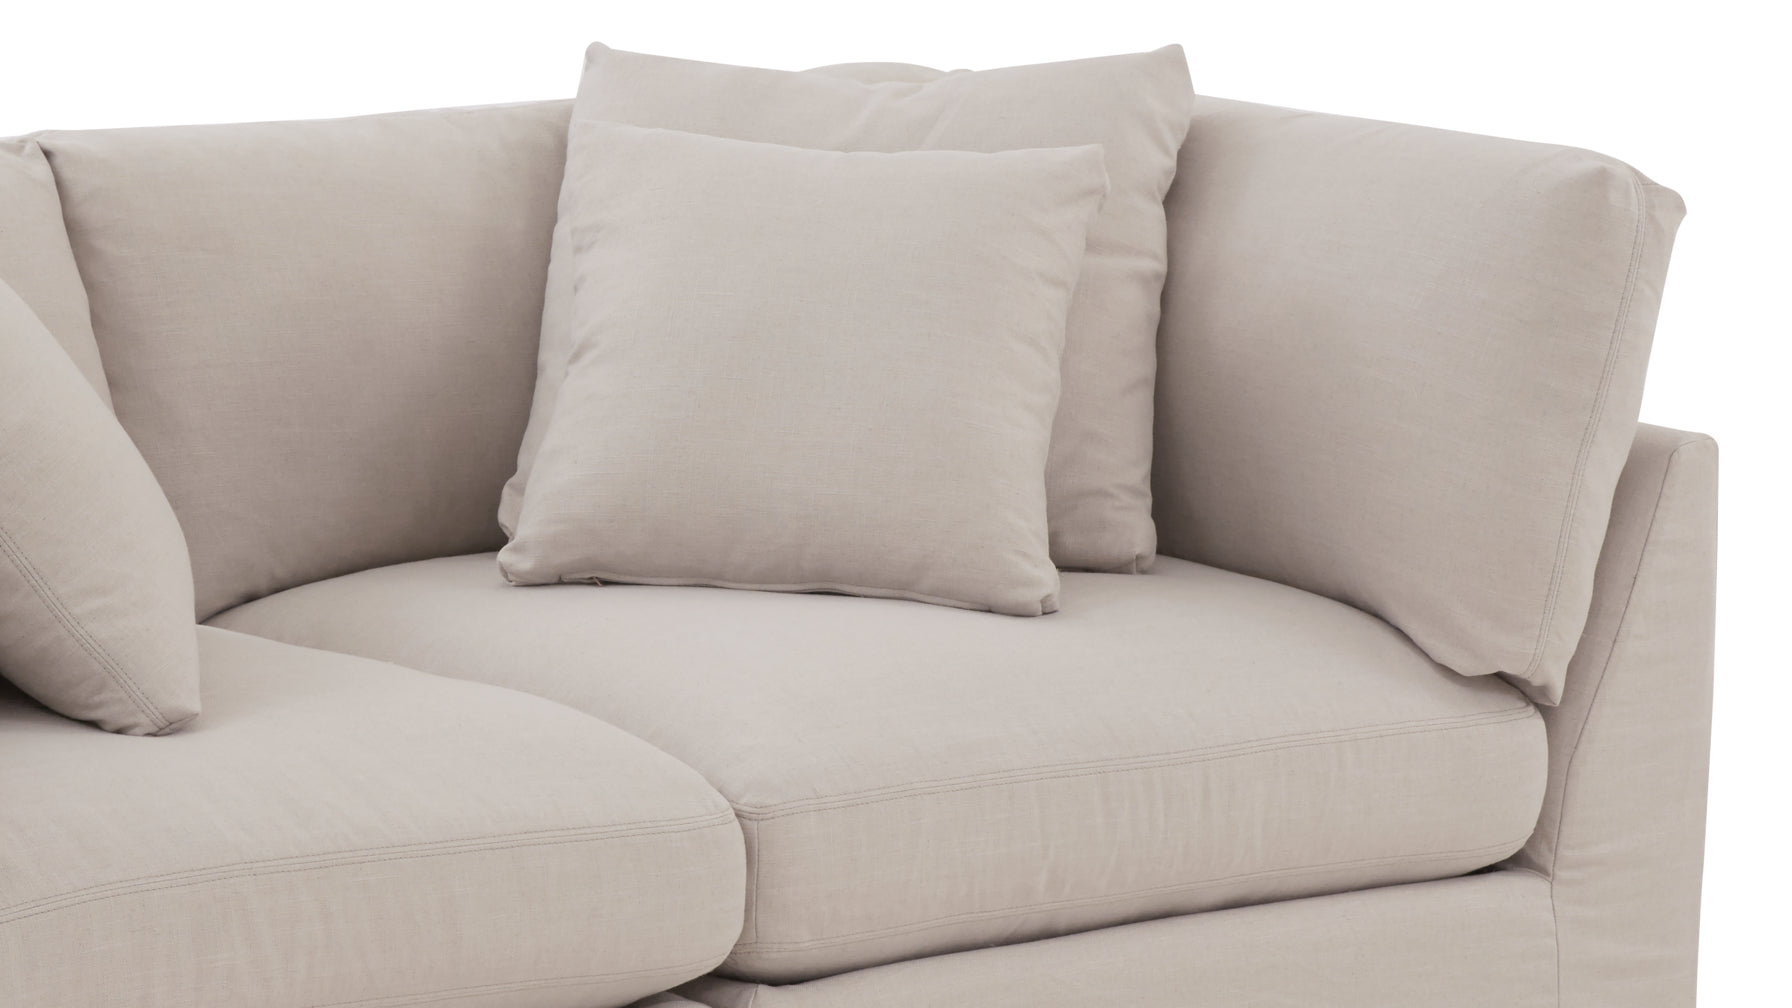 Get Together™ 2 Piece Modular Sofa, Large, Clay - Image 10